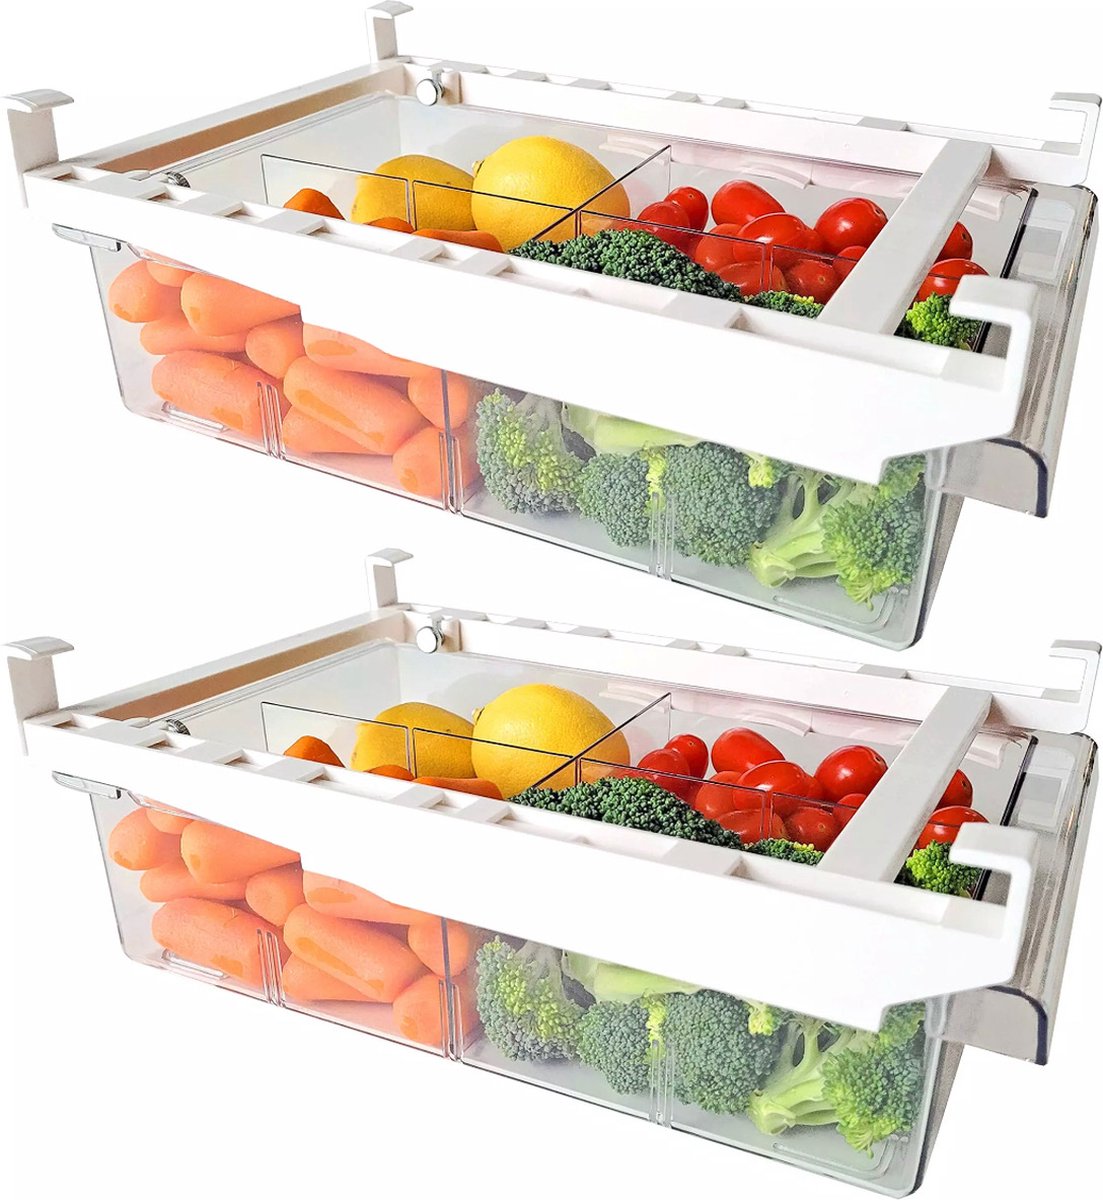 De Millennials- Transparante koelkast organizer 1 paar (2 stuks) - extra lade in koelkast - Opbergdozen - koelkast bakjes - doorzichtig met scheiding - verstelbaar -Opbergboxen -Stapelbaar -